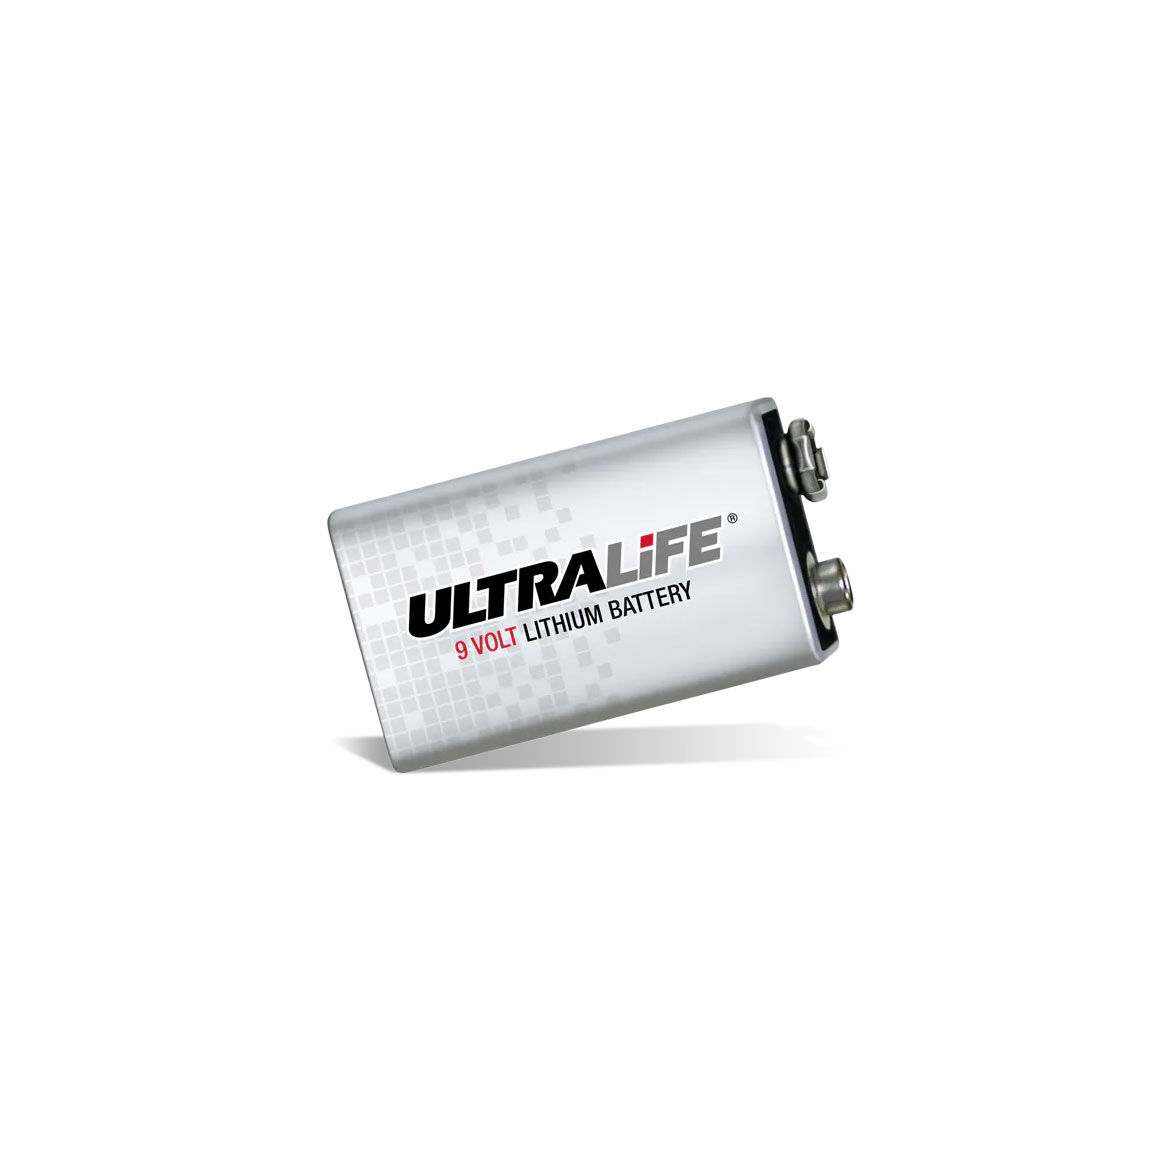 リチウム 9V 電池製品の写真